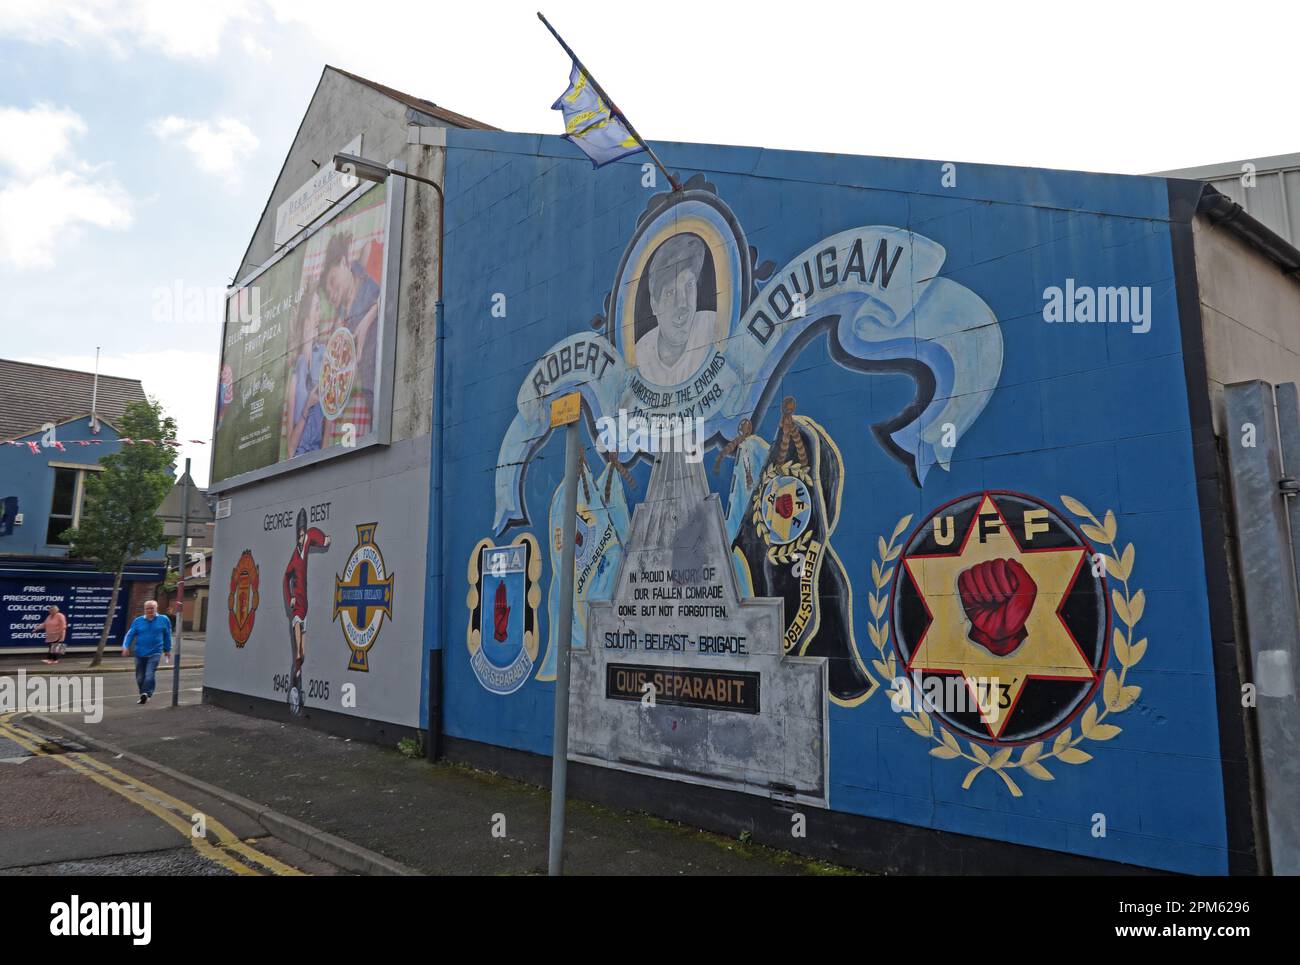 Mémorial mural de Robert Dougan, assassiné le 10th février 1998, UDA, Blythe Street, Sandy Row, Belfast, Irlande du Nord, Royaume-Uni, BT12 5EY Banque D'Images